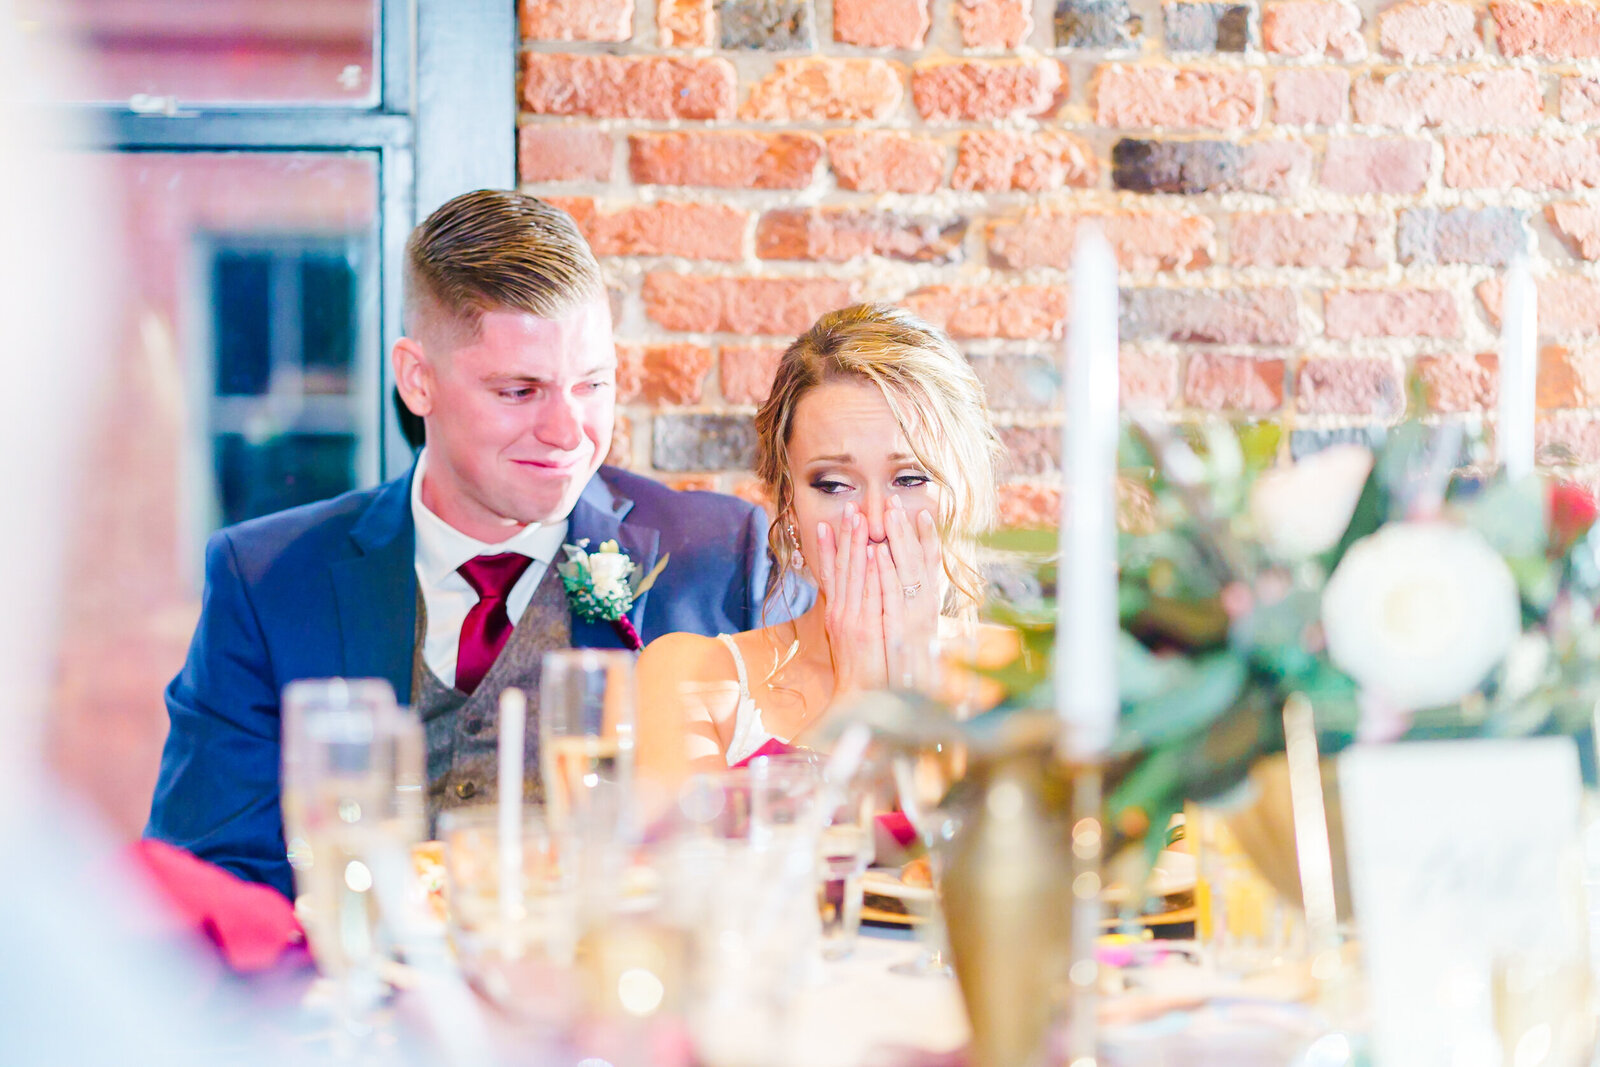 Bride crying at New Hampshire at wedding reception